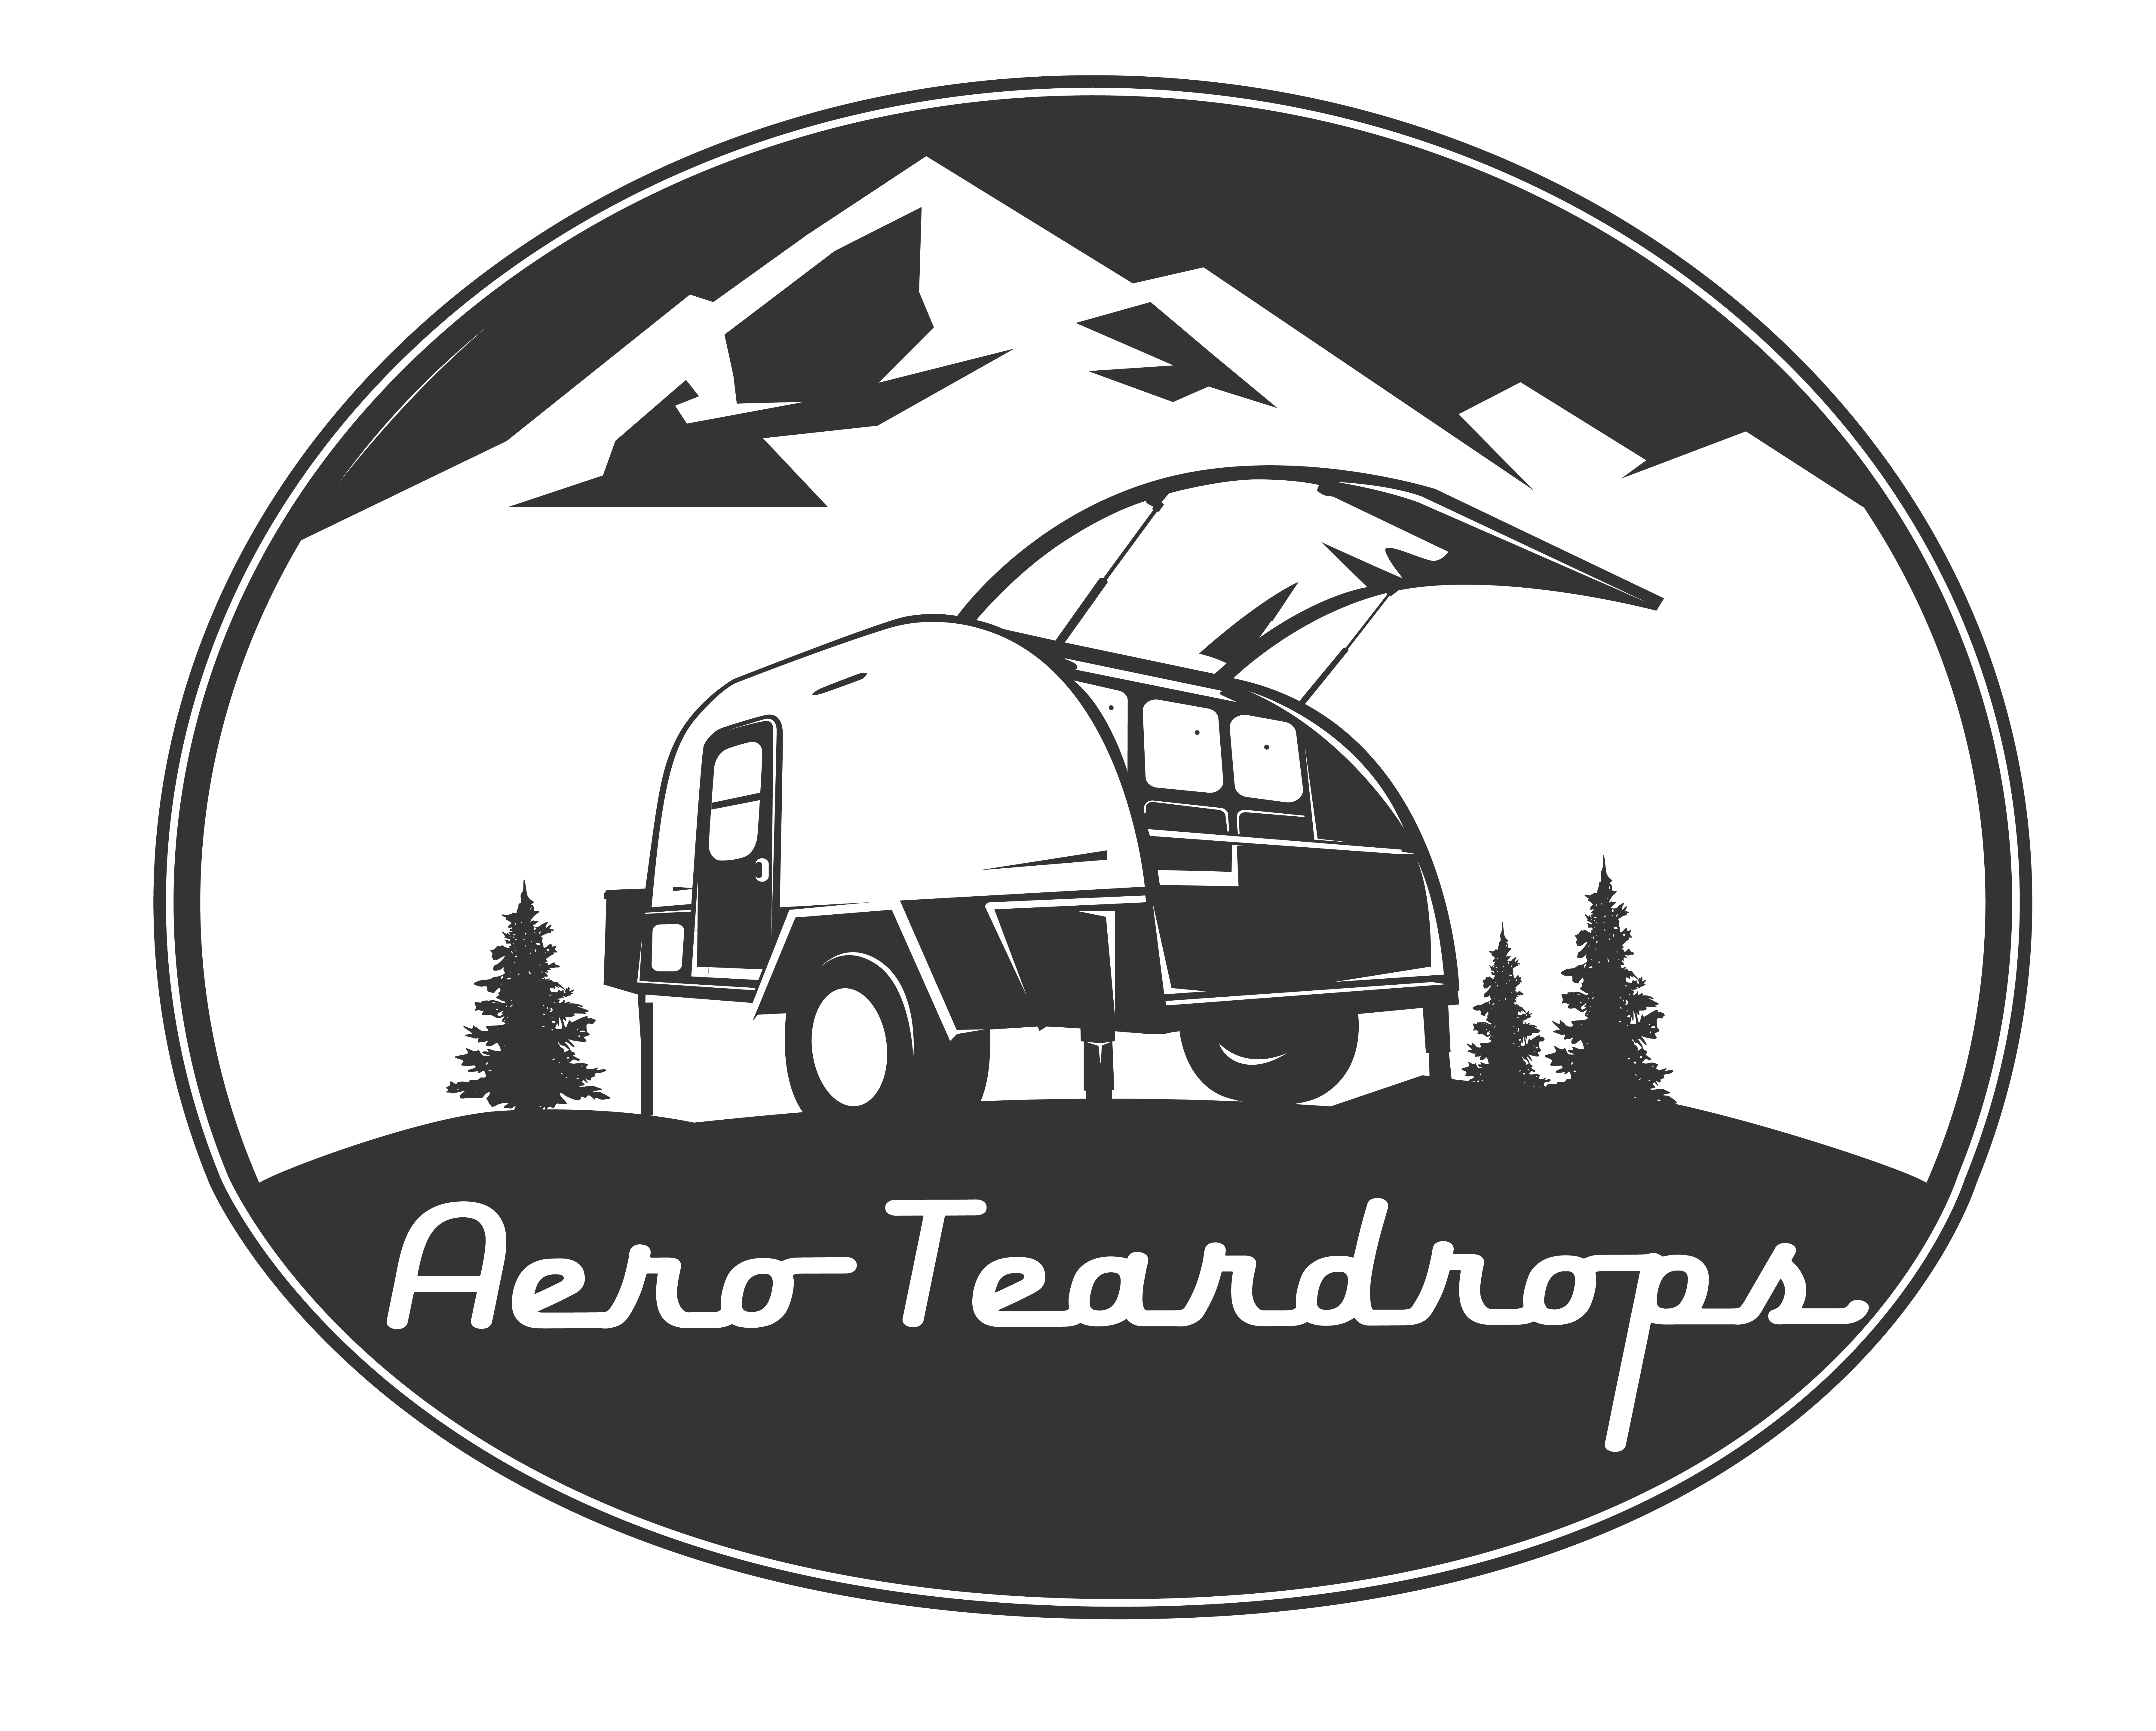 Aero Teardrops